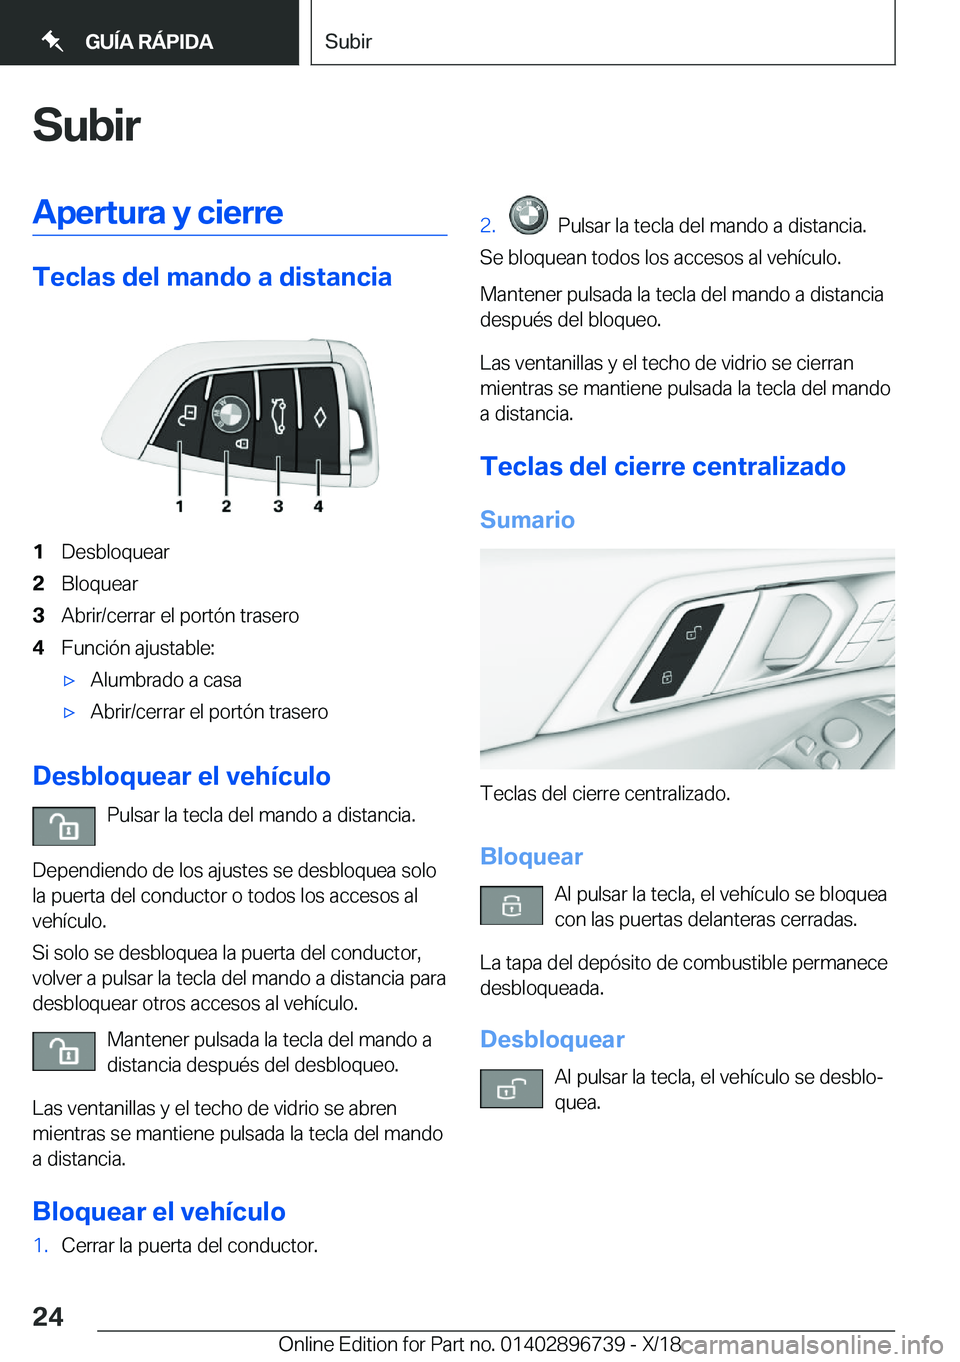 BMW X5 2019  Manuales de Empleo (in Spanish) �S�u�b�i�r�A�p�e�r�t�u�r�a��y��c�i�e�r�r�e
�T�e�c�l�a�s��d�e�l��m�a�n�d�o��a��d�i�s�t�a�n�c�i�a
�1�D�e�s�b�l�o�q�u�e�a�r�2�B�l�o�q�u�e�a�r�3�A�b�r�i�r�/�c�e�r�r�a�r��e�l��p�o�r�t�